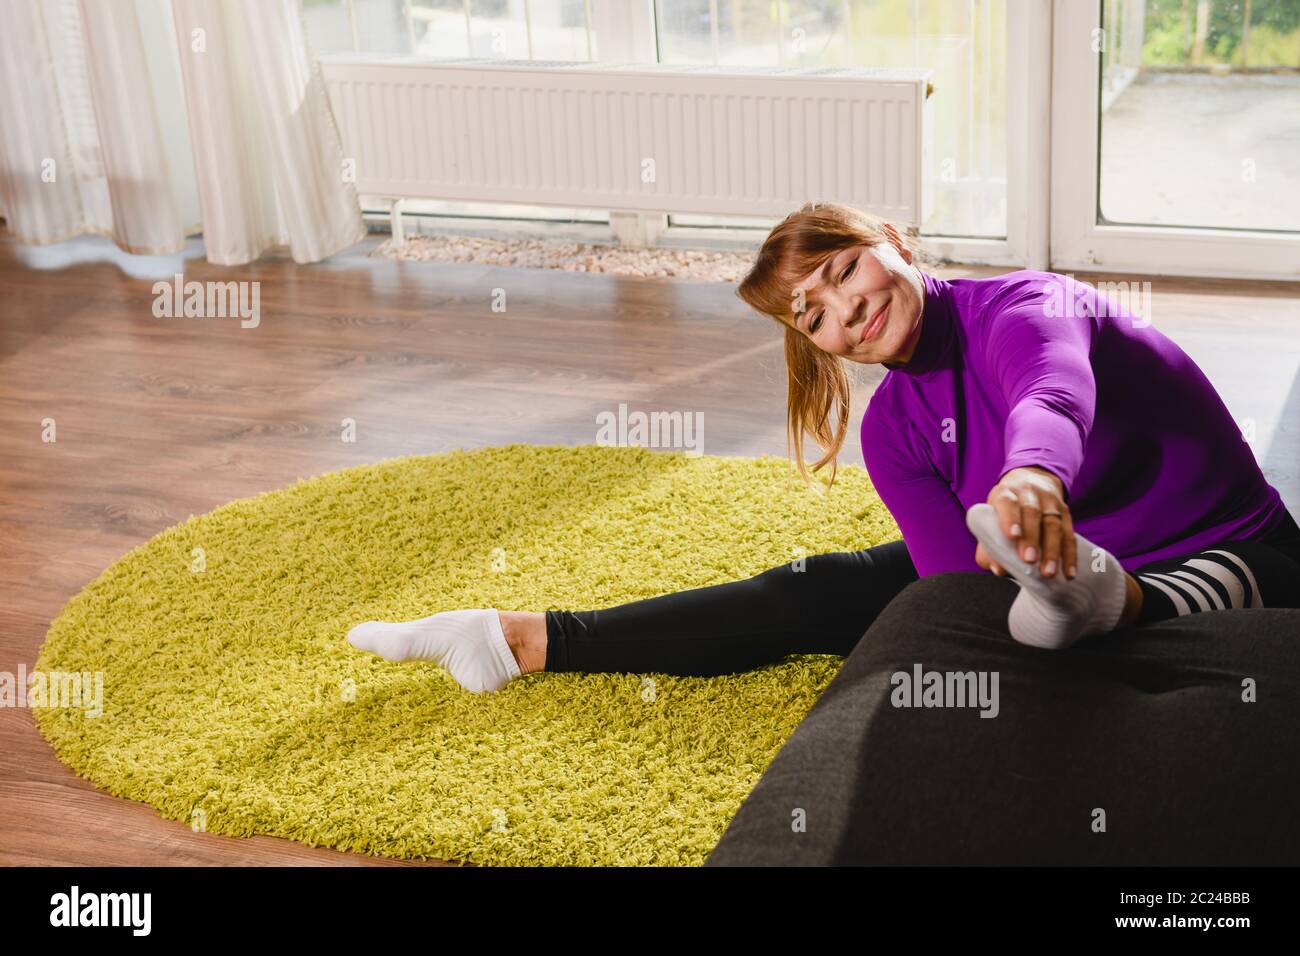 Ältere Frau Rentner machen Workout Stretching Übung zu Hause Sofa und Teppich, tragen Sport Leggings und lila Top, aktiven Ruhestand Lebensstil Stockfoto